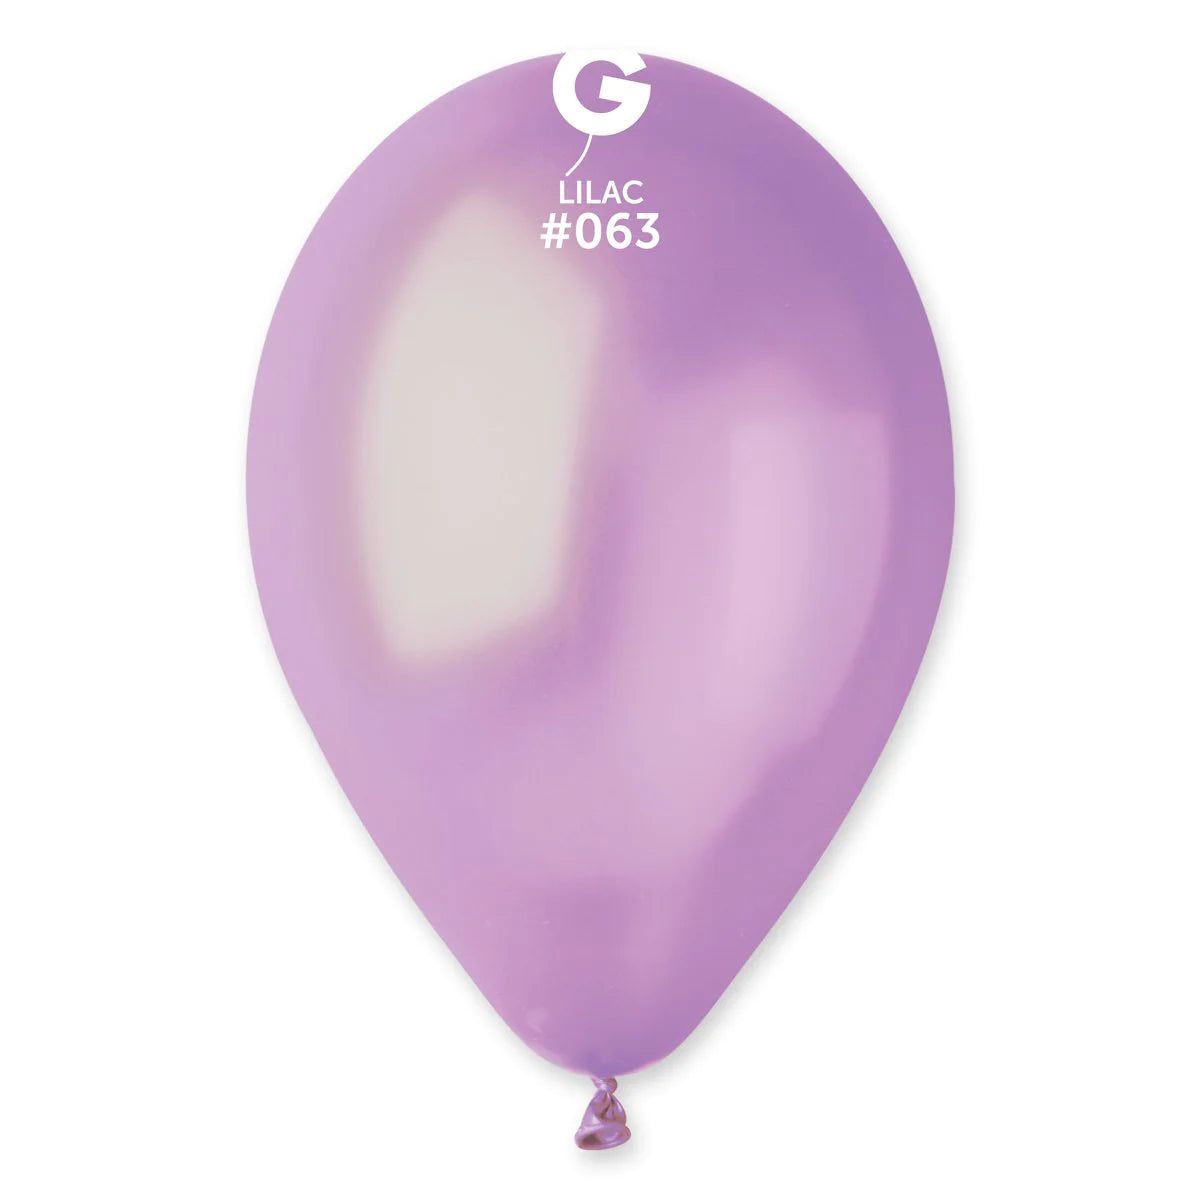 Metallic Balloon Lavender #063 size 5" 12" 19" 31"